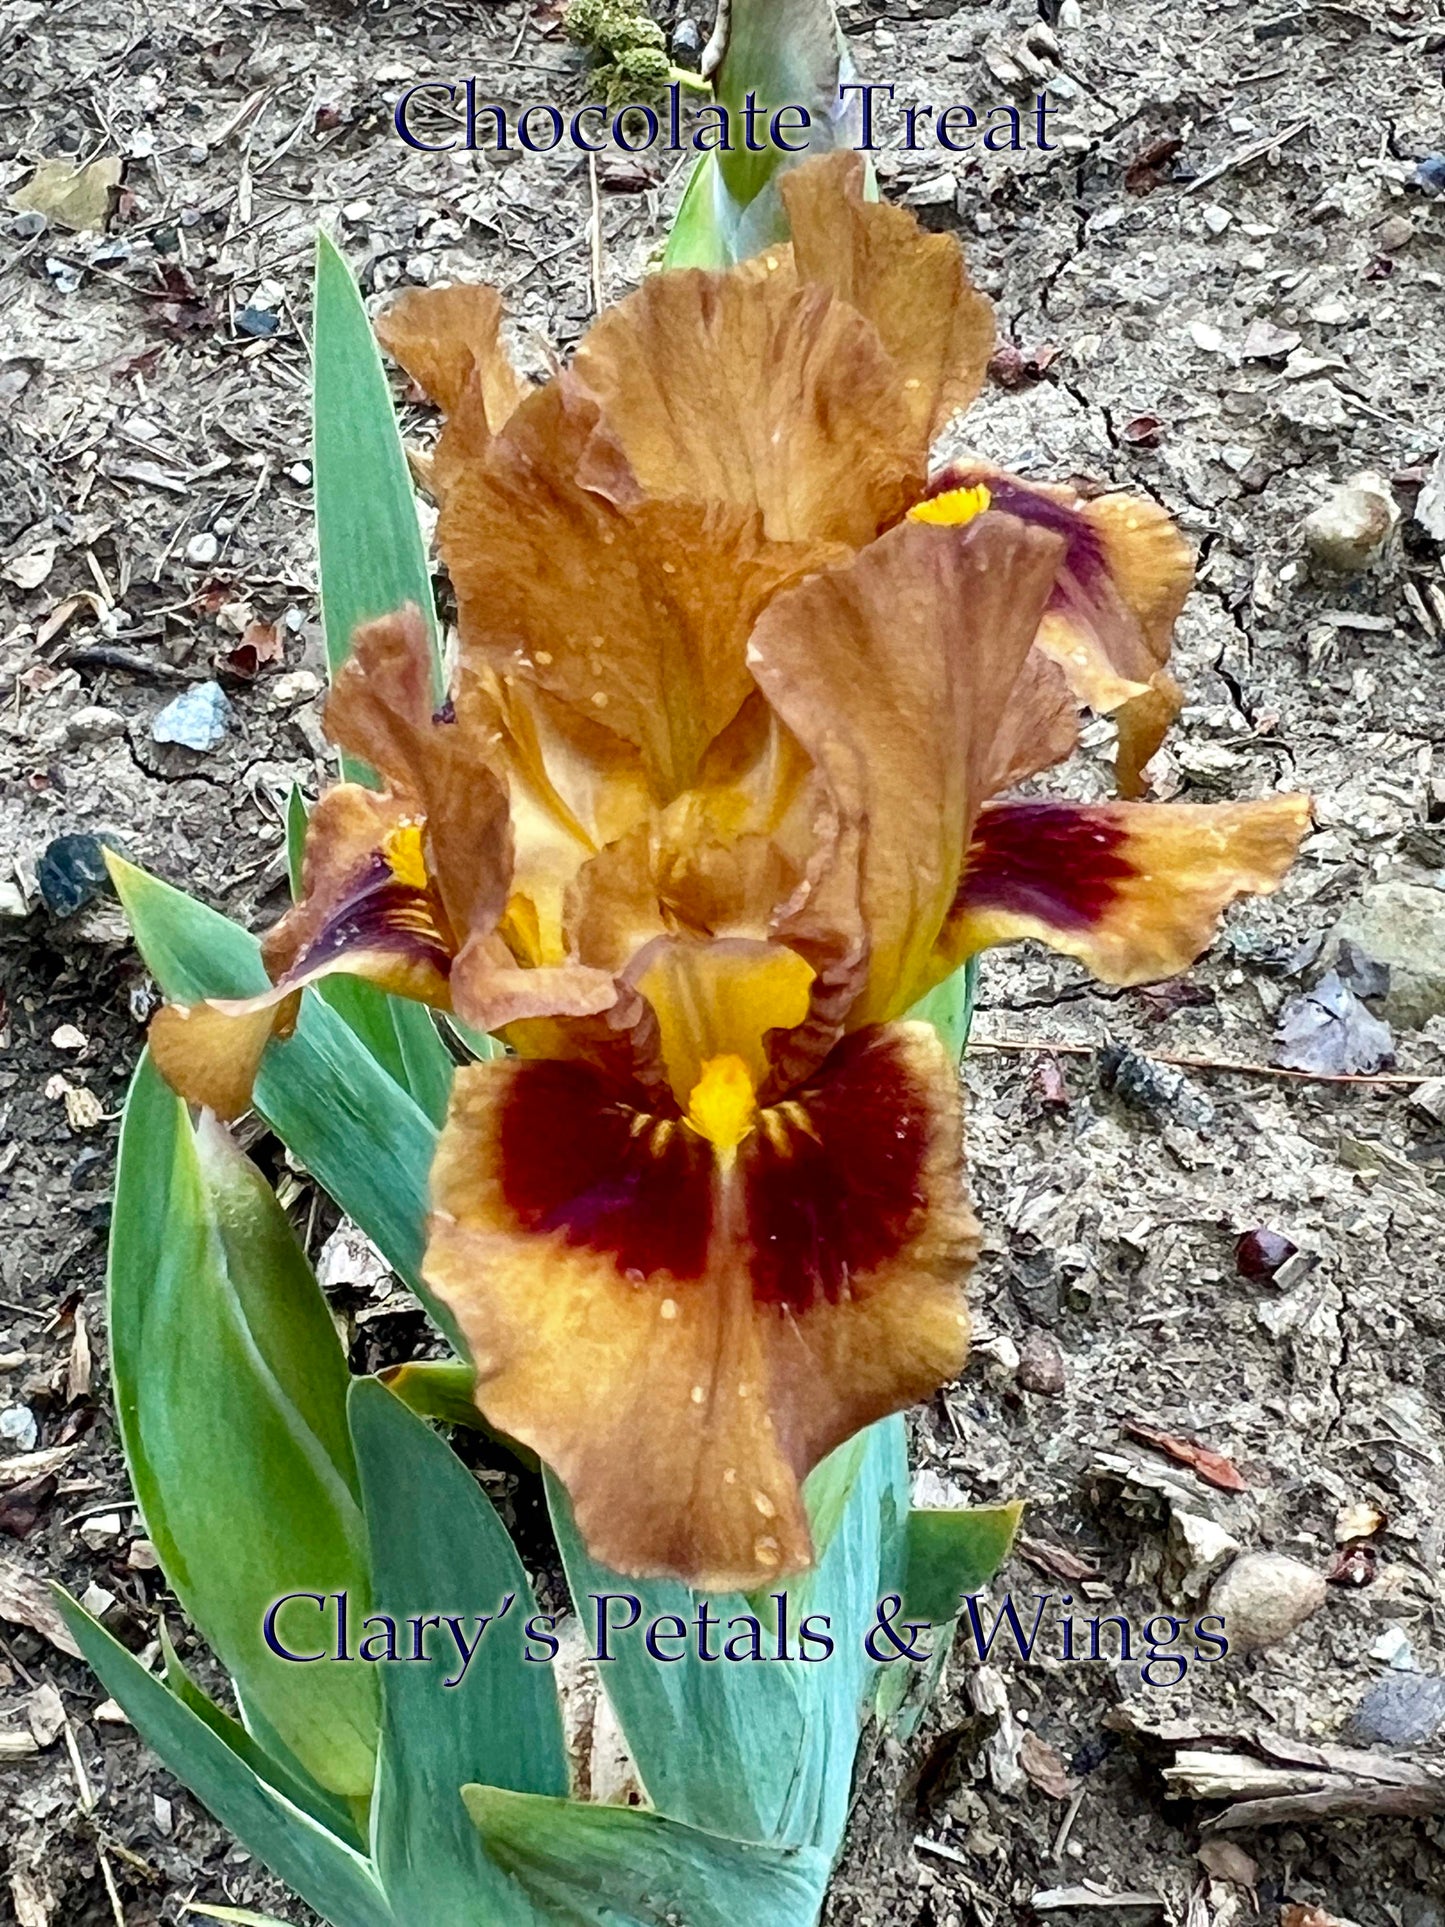 Chocolate Treat - Standard Dwarf Bearded Iris